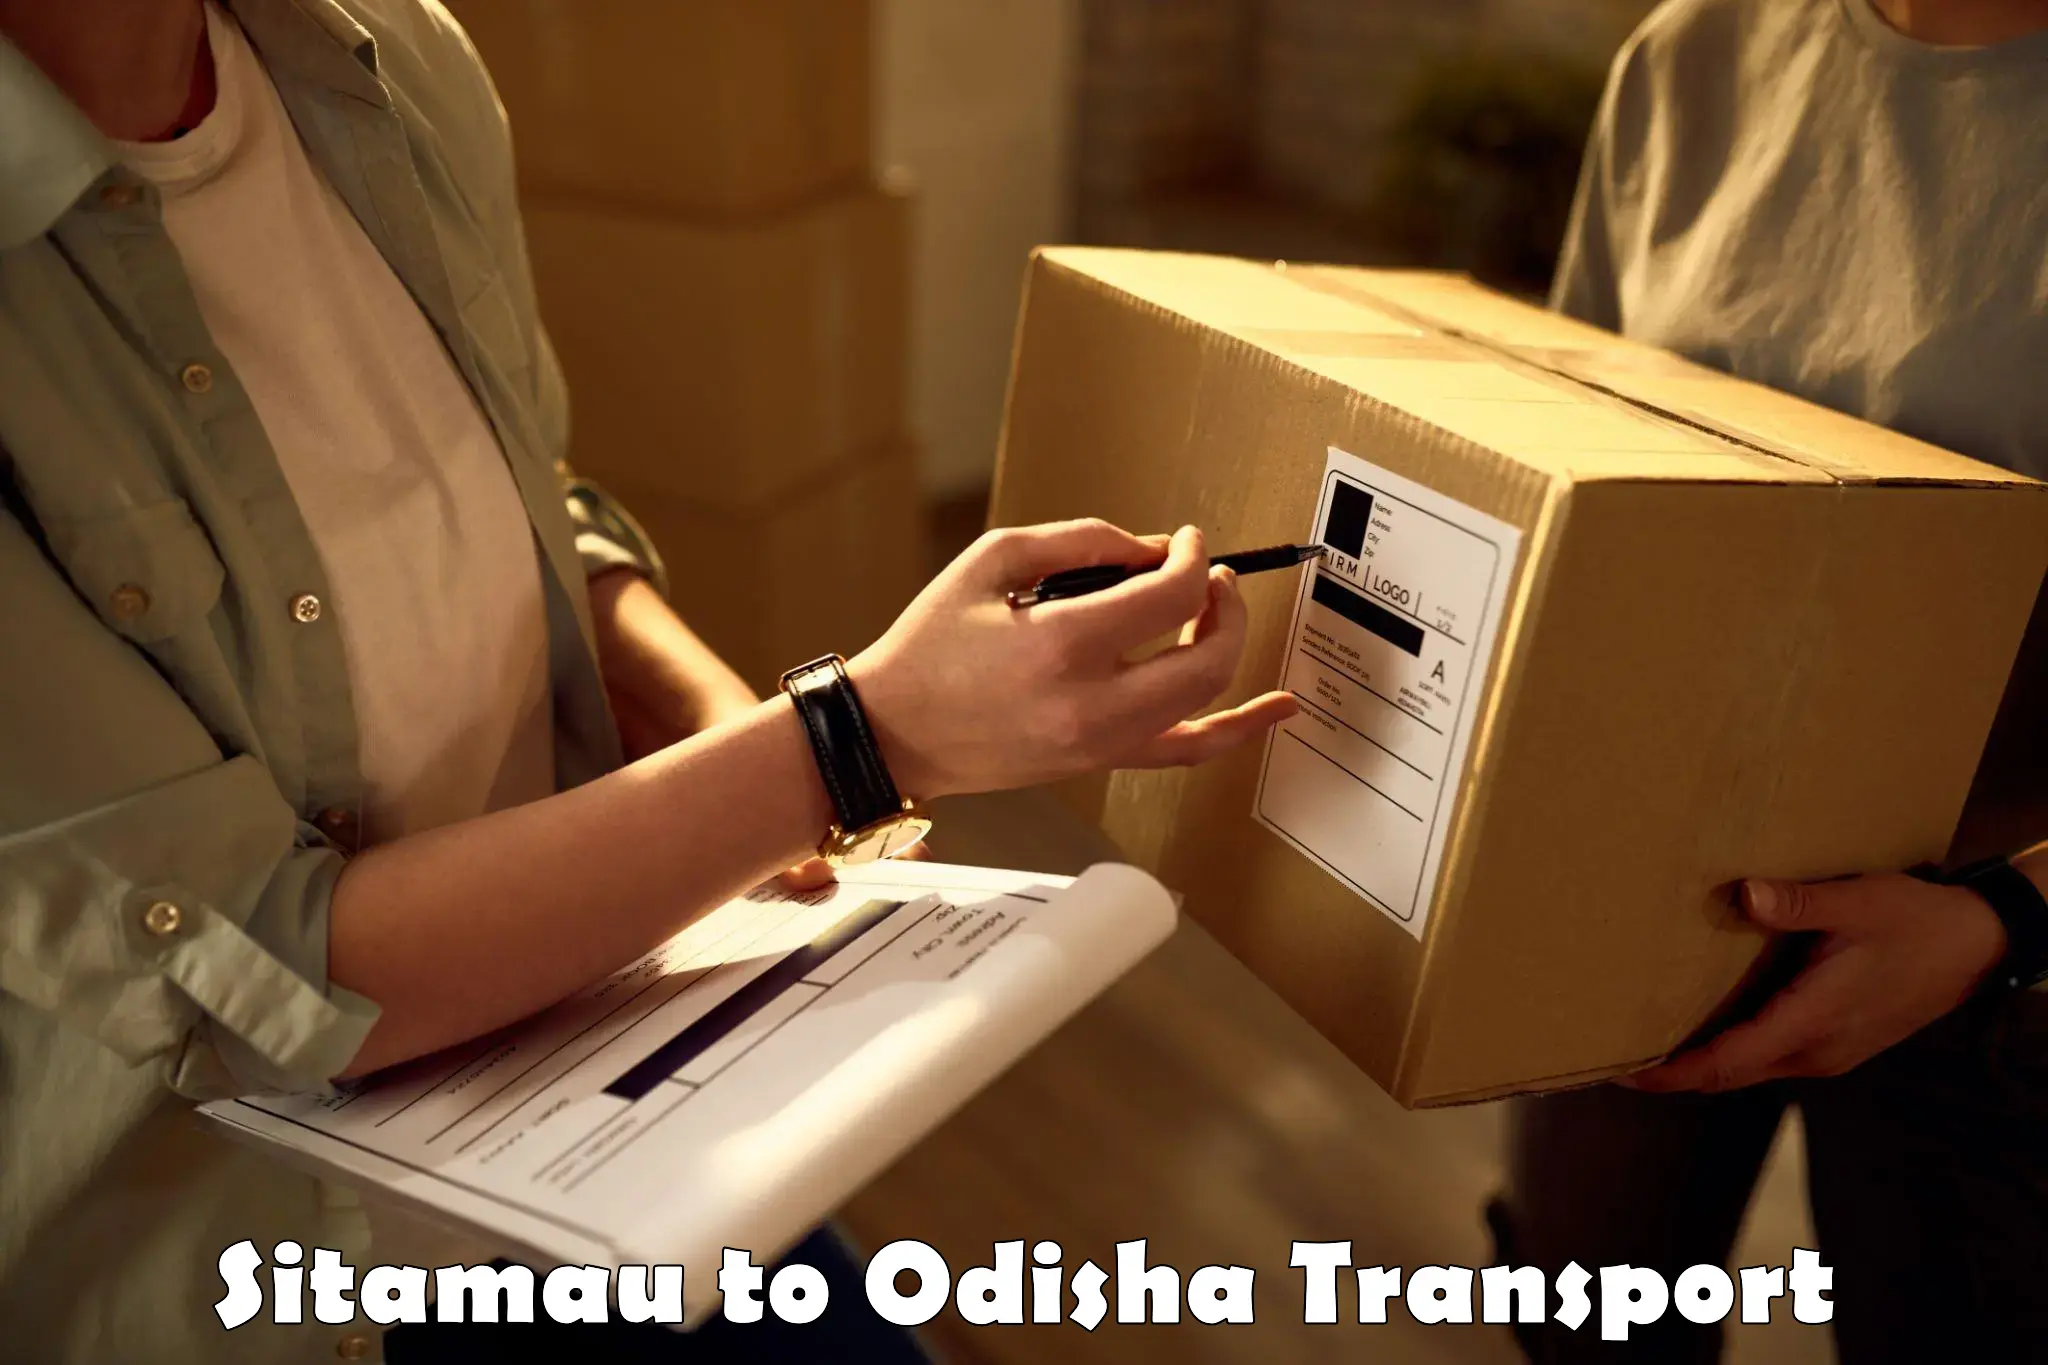 Road transport online services Sitamau to Kandhamal